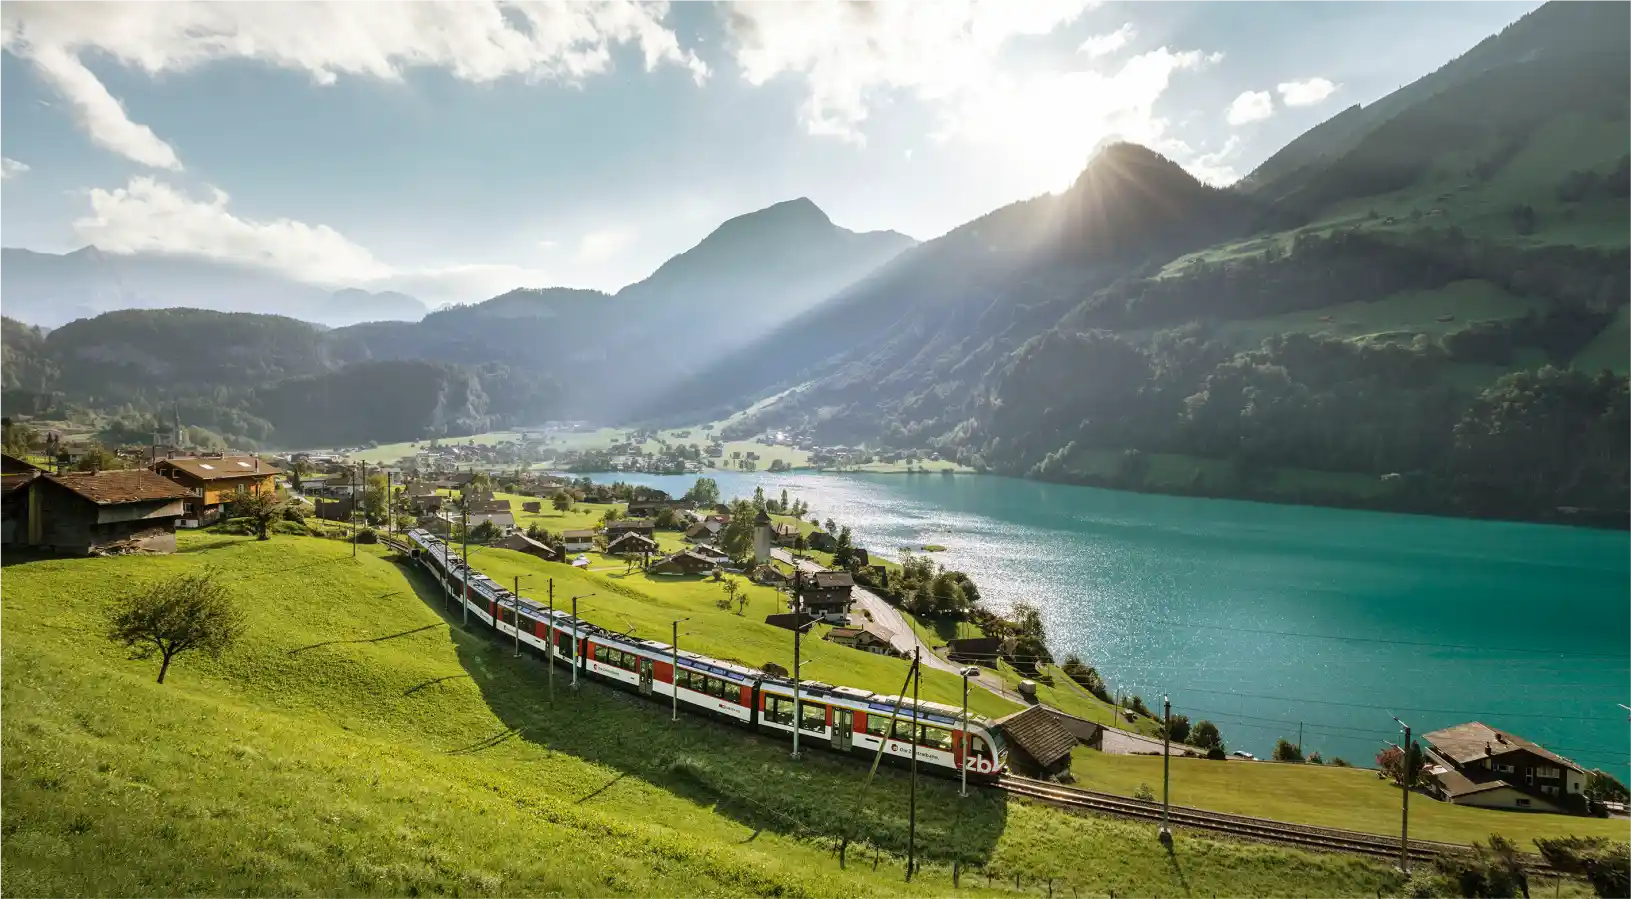 Luzern-Interlaken Express
